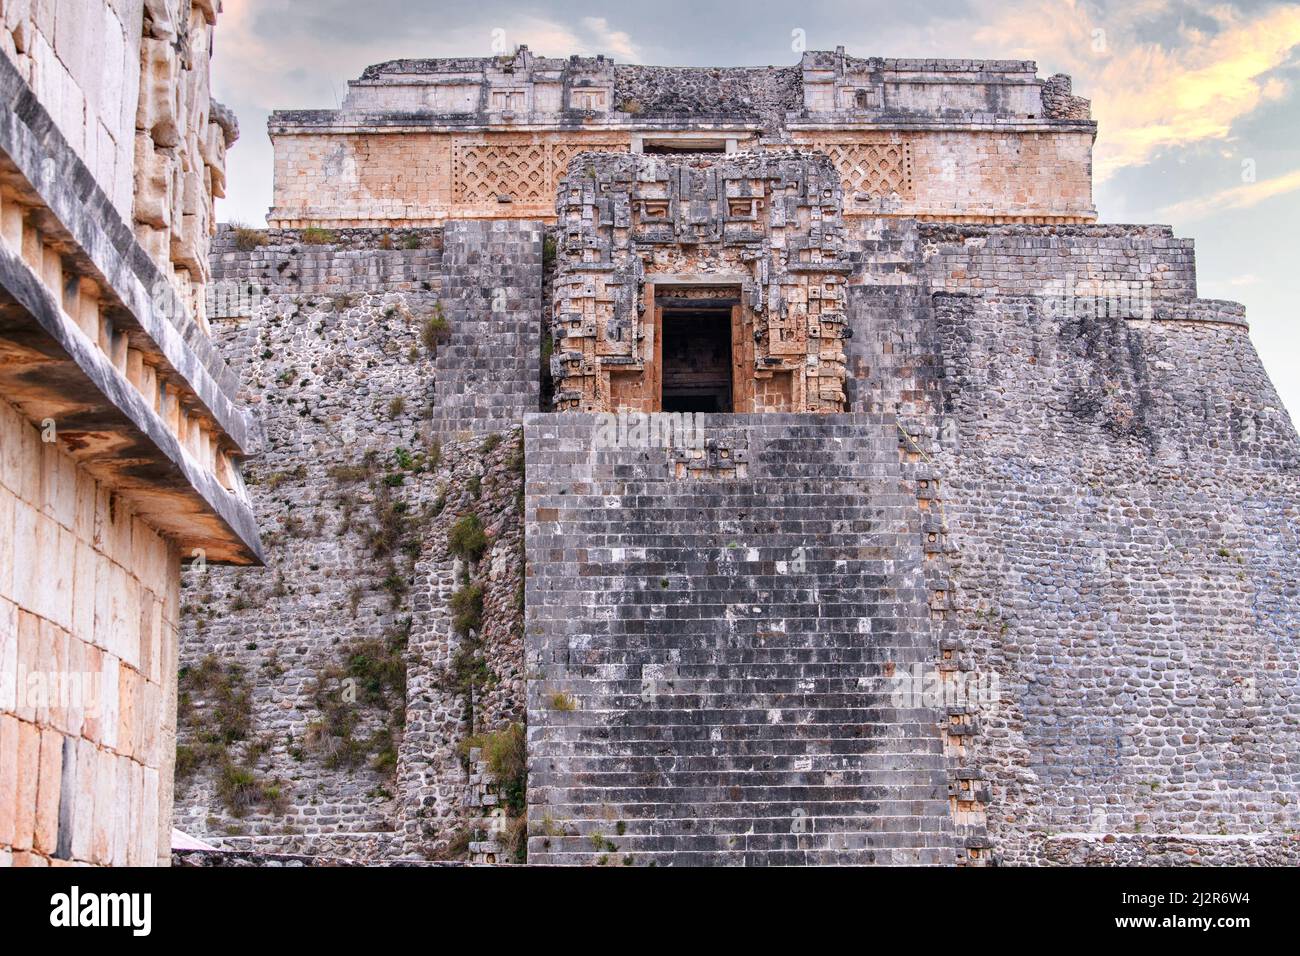 Piramide del mago in Uxmal antica città maya in Yucatan, Messico. Uxmal - famoso sito archeologico, rappresentativo dello stile architettonico Puuc. Foto Stock